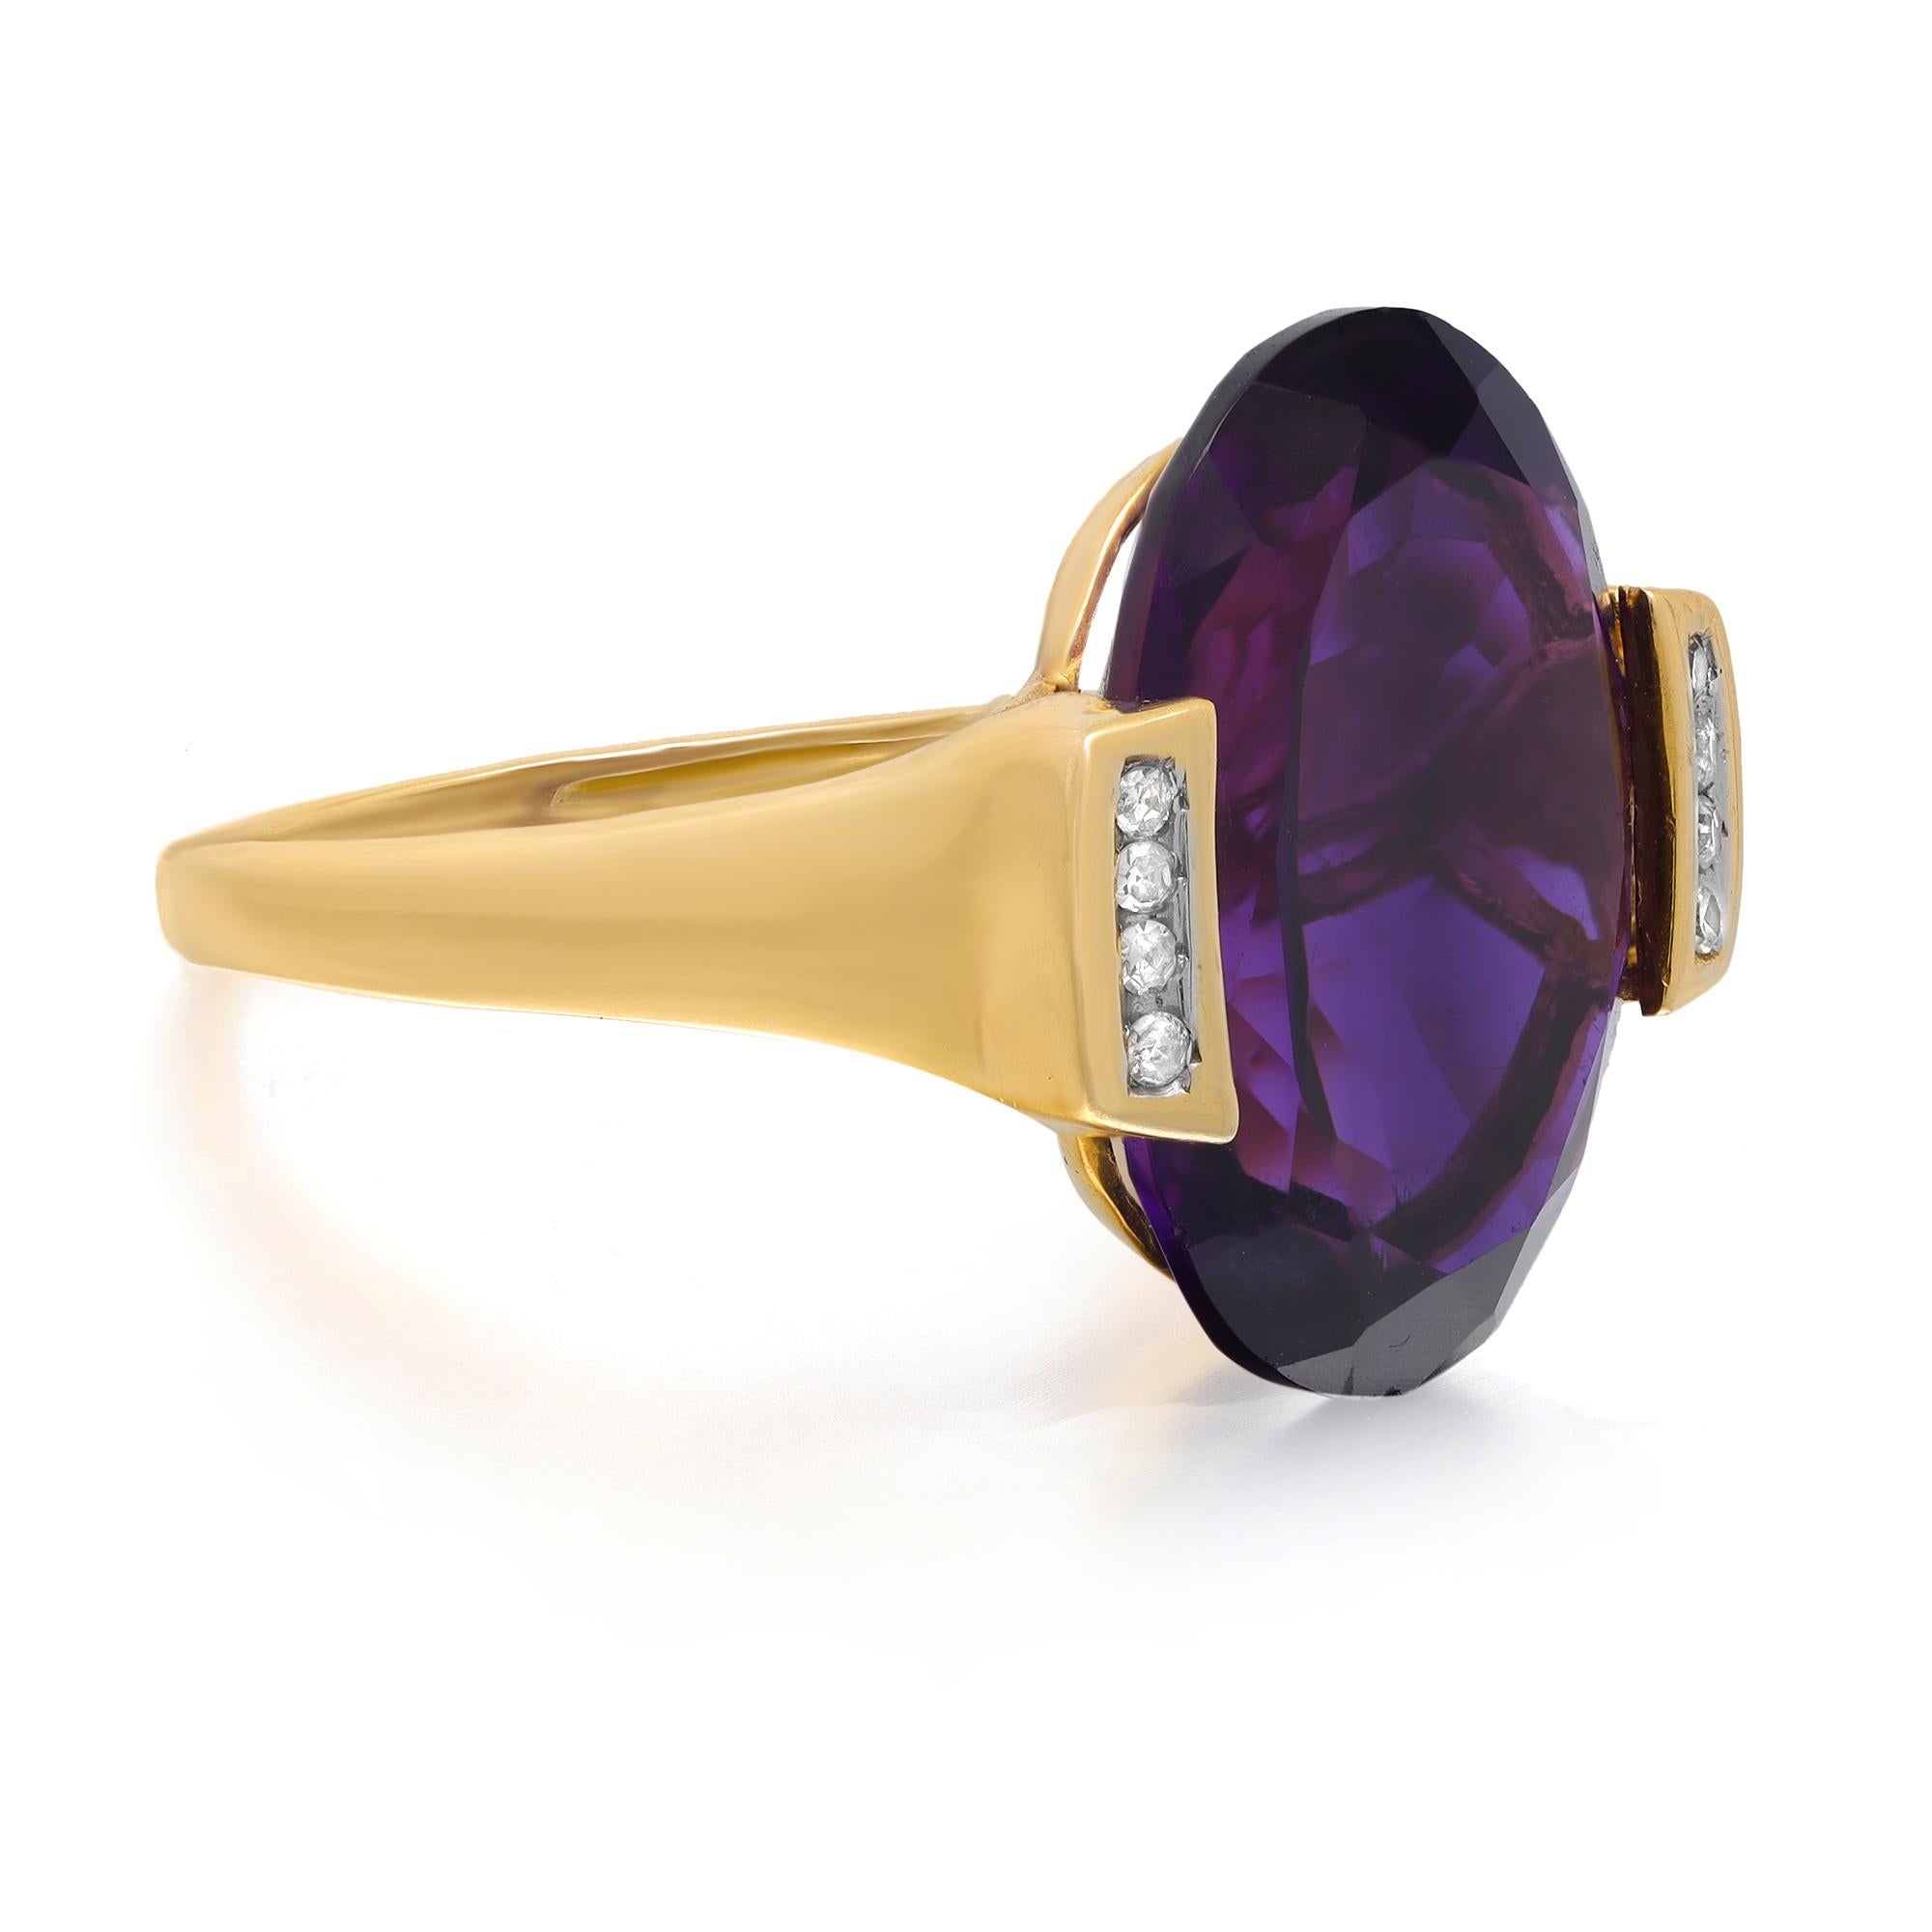 Diese schöne lila ovale Form Amethyst und Diamant-Cocktail-Ring ist in feinen 14k Gelbgold gefertigt. Ein ausgezeichneter ovaler Amethyst mit einem Gewicht von ca. 11,00 Karat wird von winzigen runden Diamanten im Brillantschliff flankiert. Ring